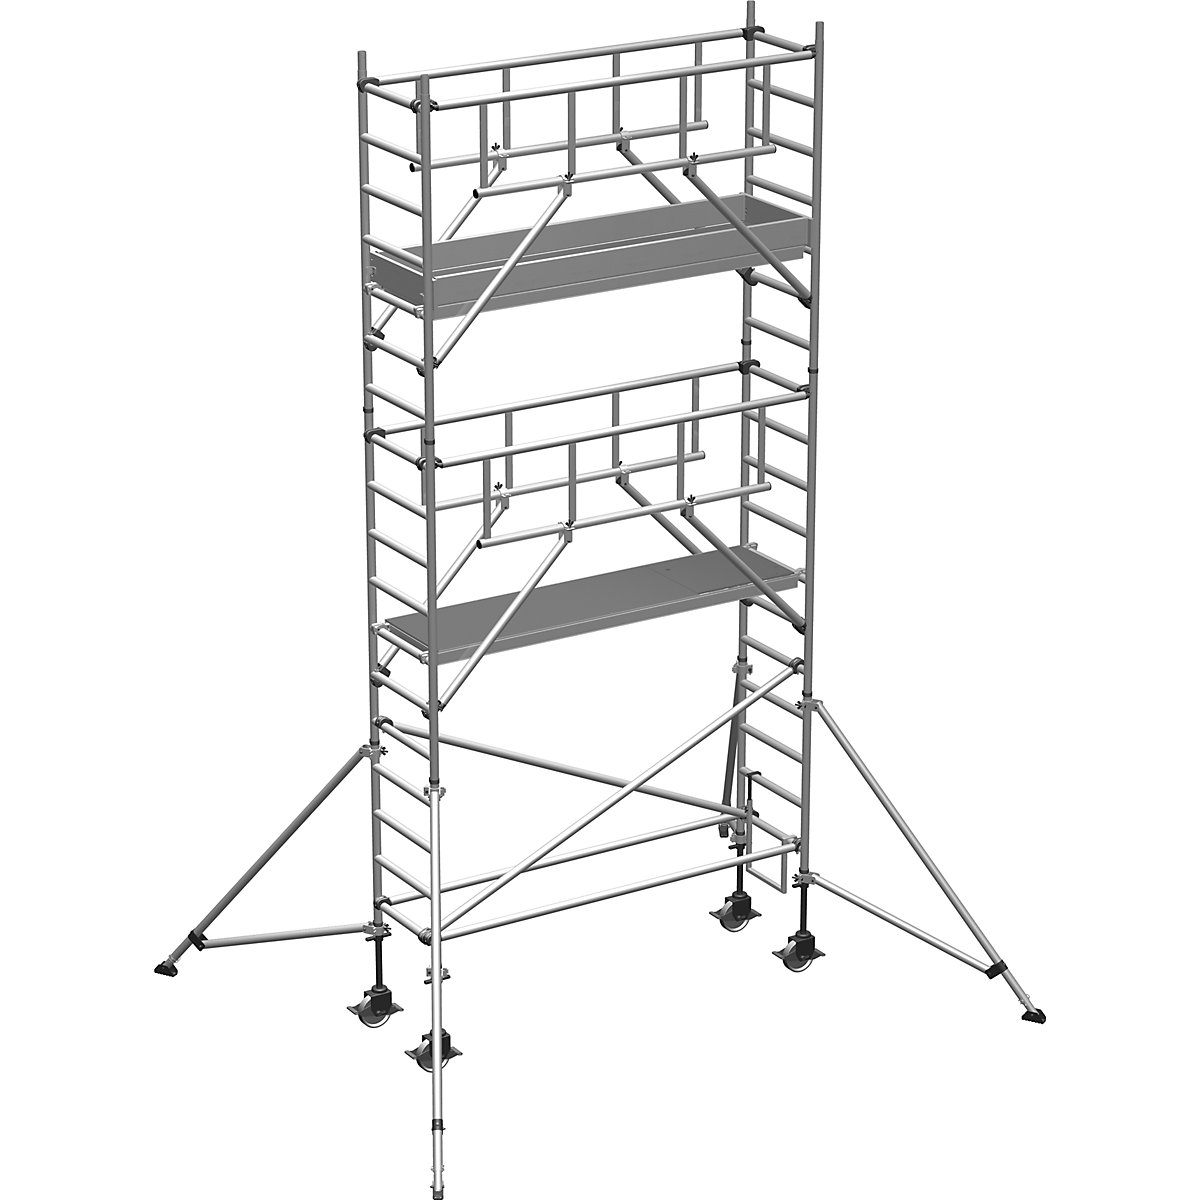 Pomični oder S-PLUS – ZARGES, ploščad 1,80 x 0,60 m, delovna višina 6,45 m